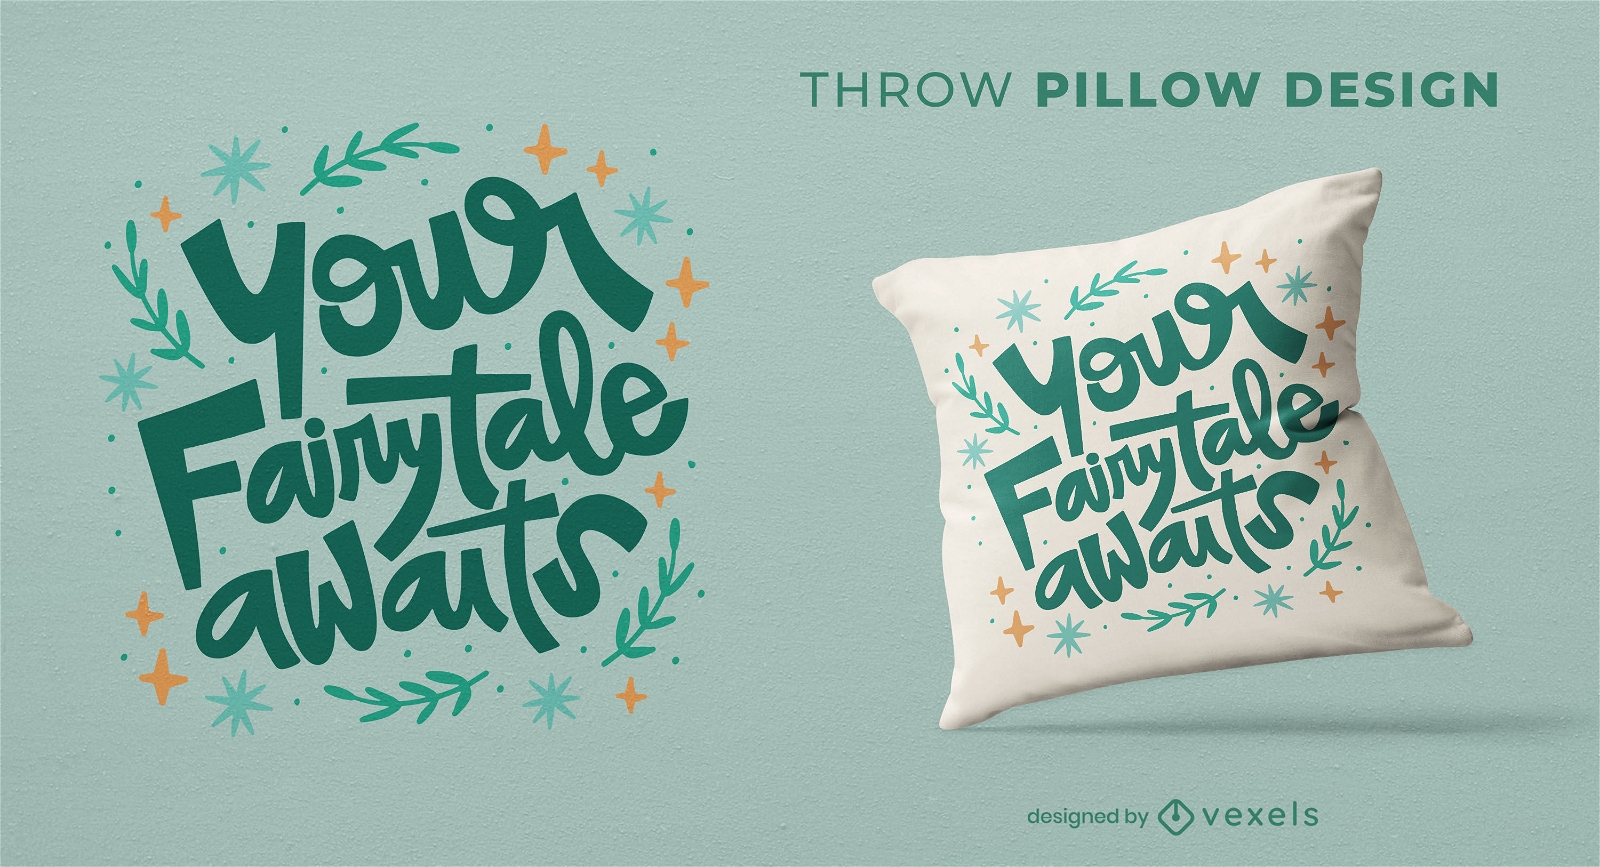 Fairytale throw pillow design